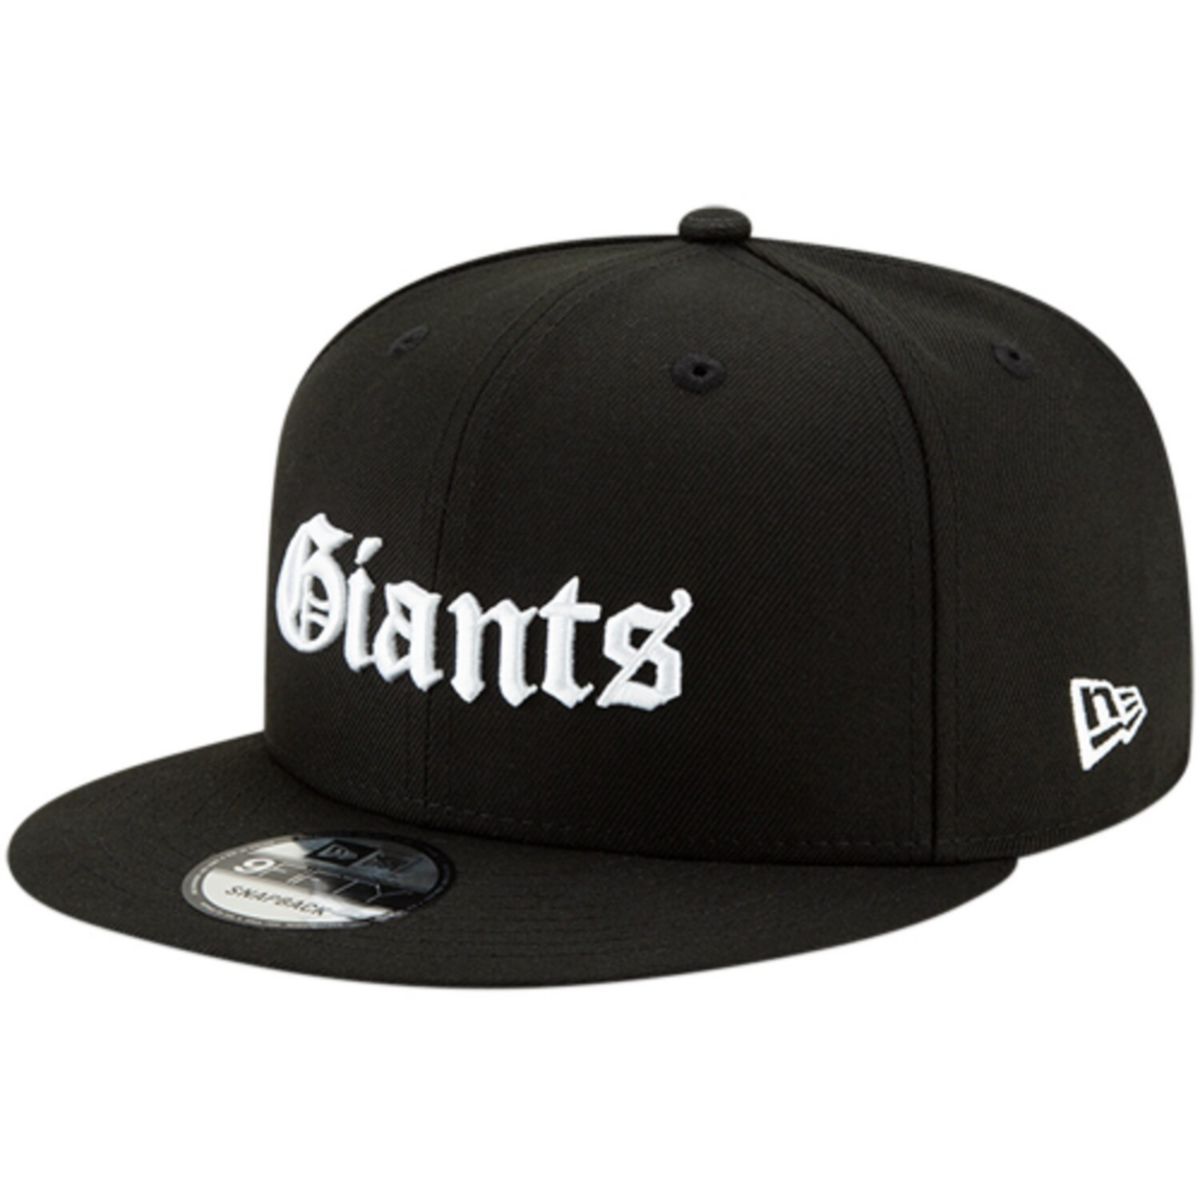 Мужская черная кепка New Era с готическим шрифтом New York Giants 9FIFTY Регулируемая бейсболка Snapback New Era